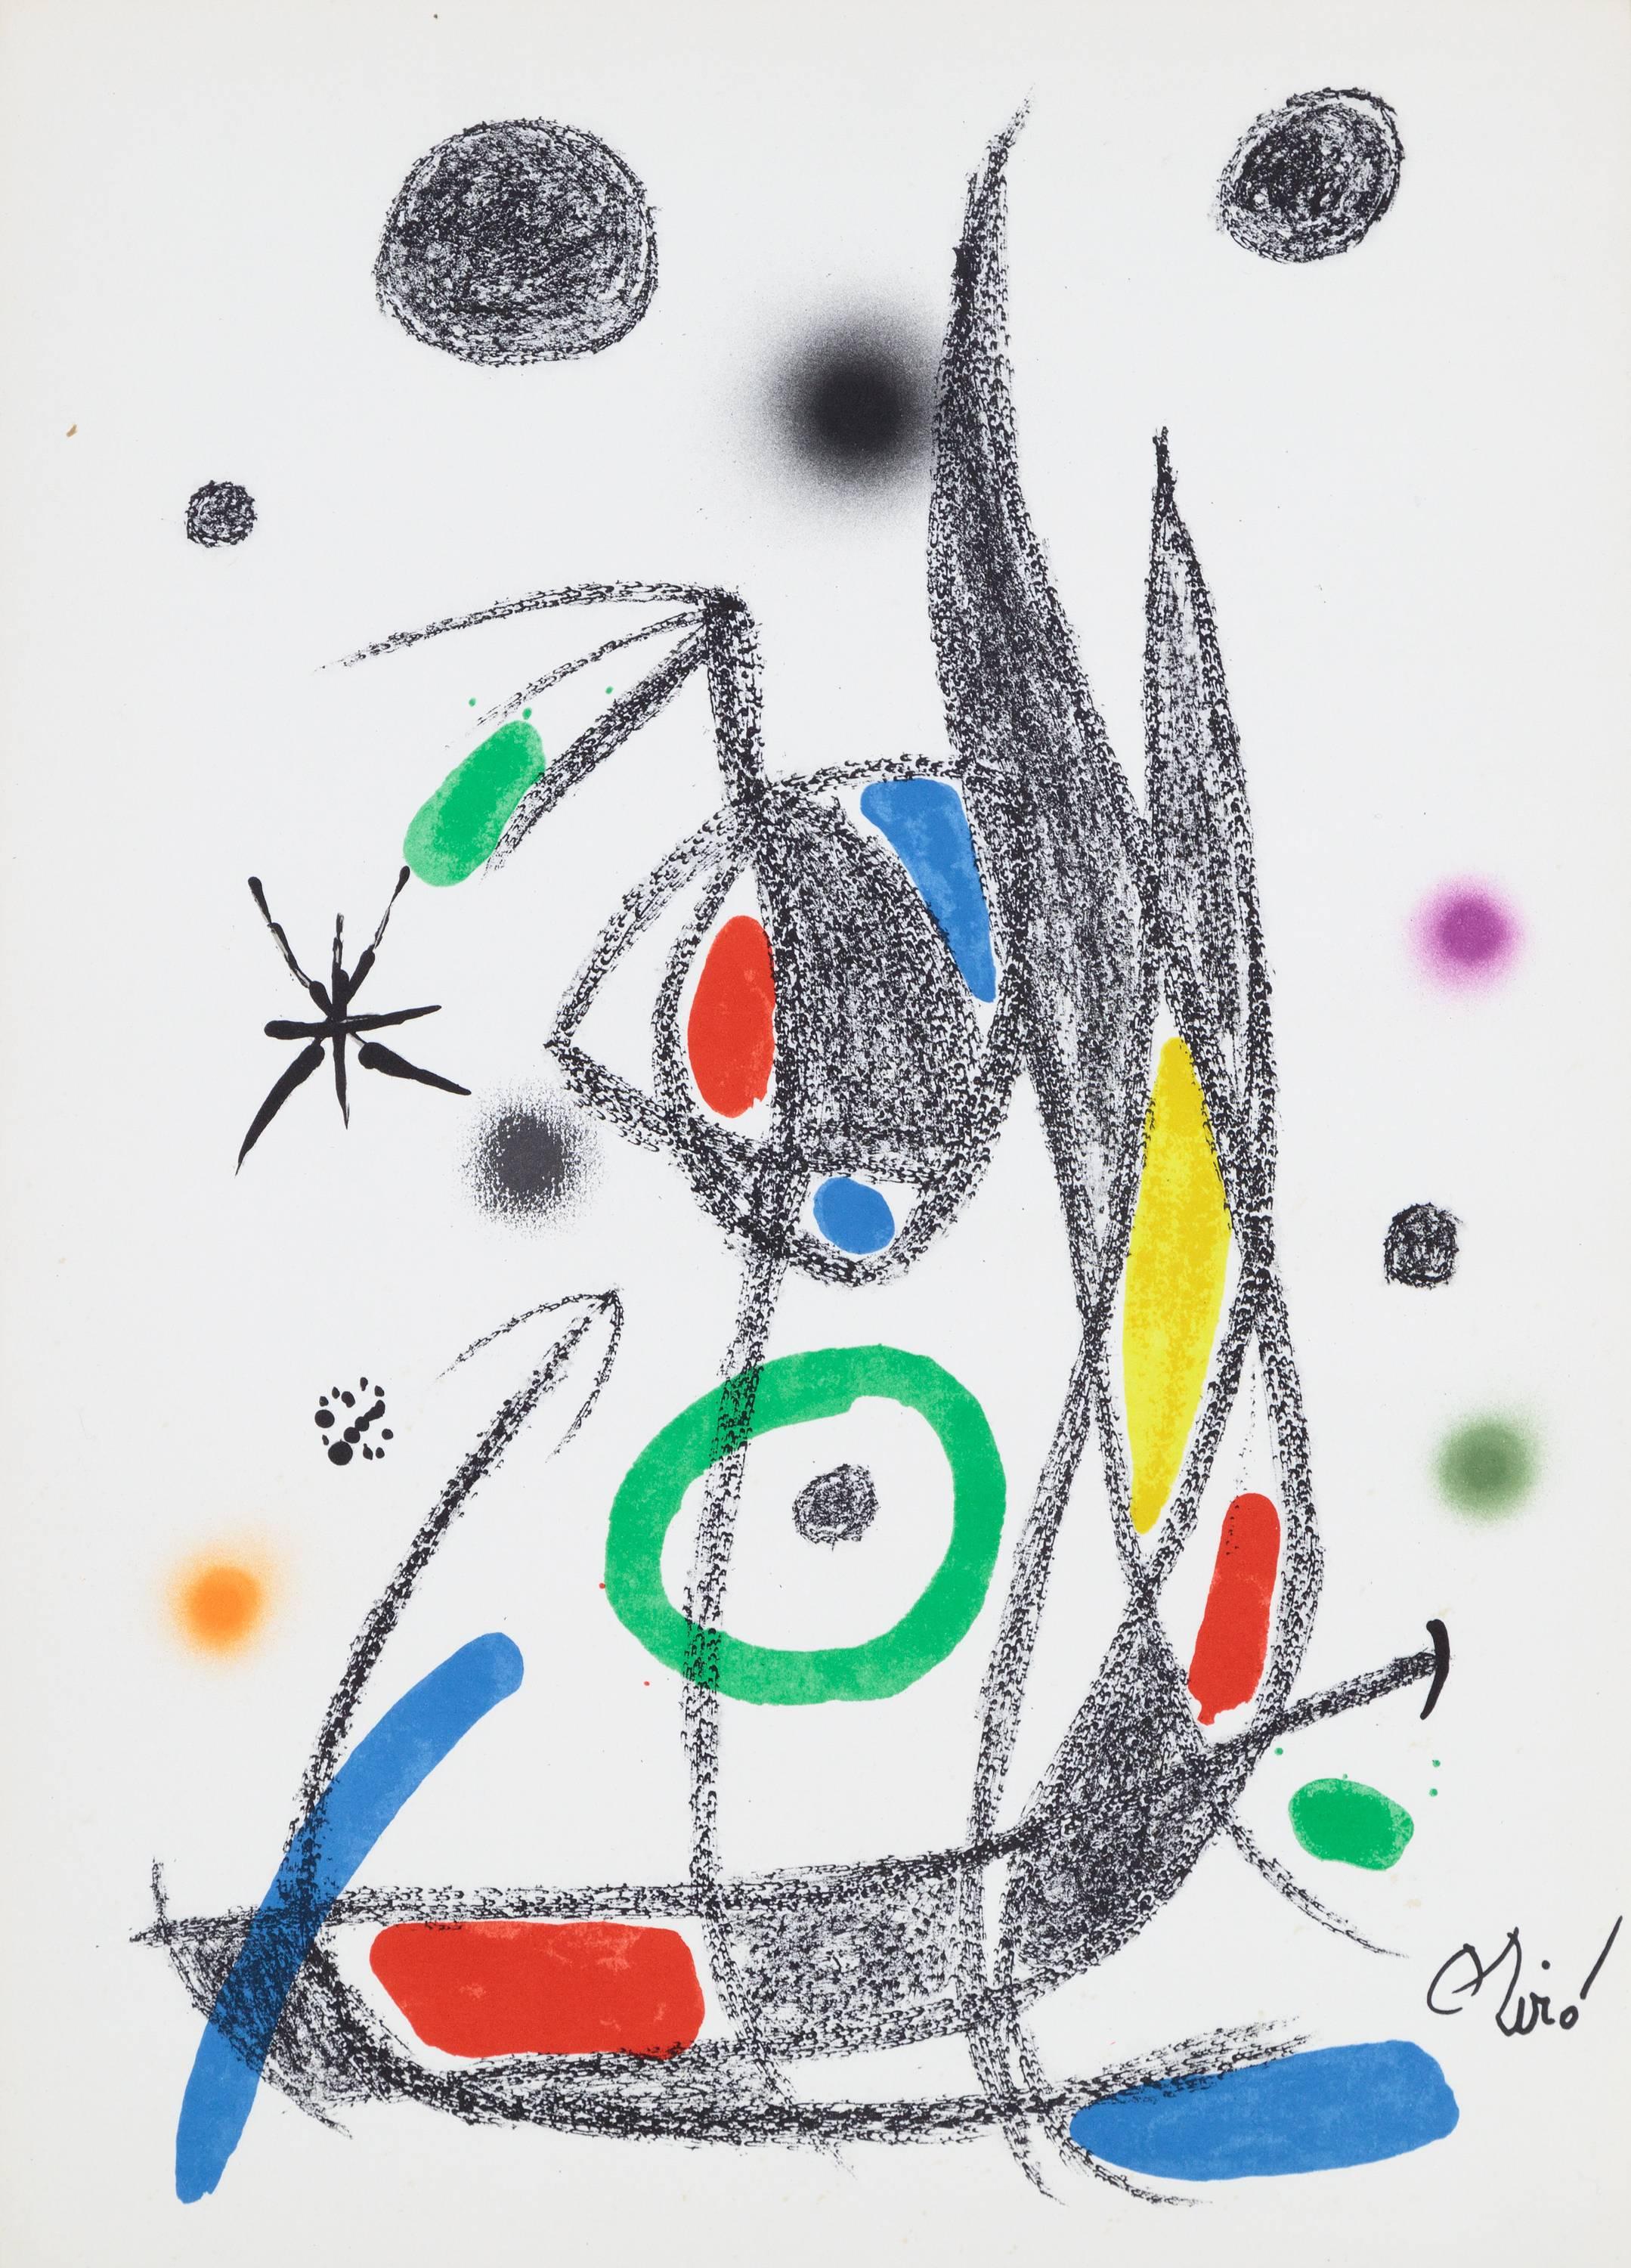 Joan Miró Abstract Print - Meravillas con Variaciones Acrosticas en el Jardin de Miro'